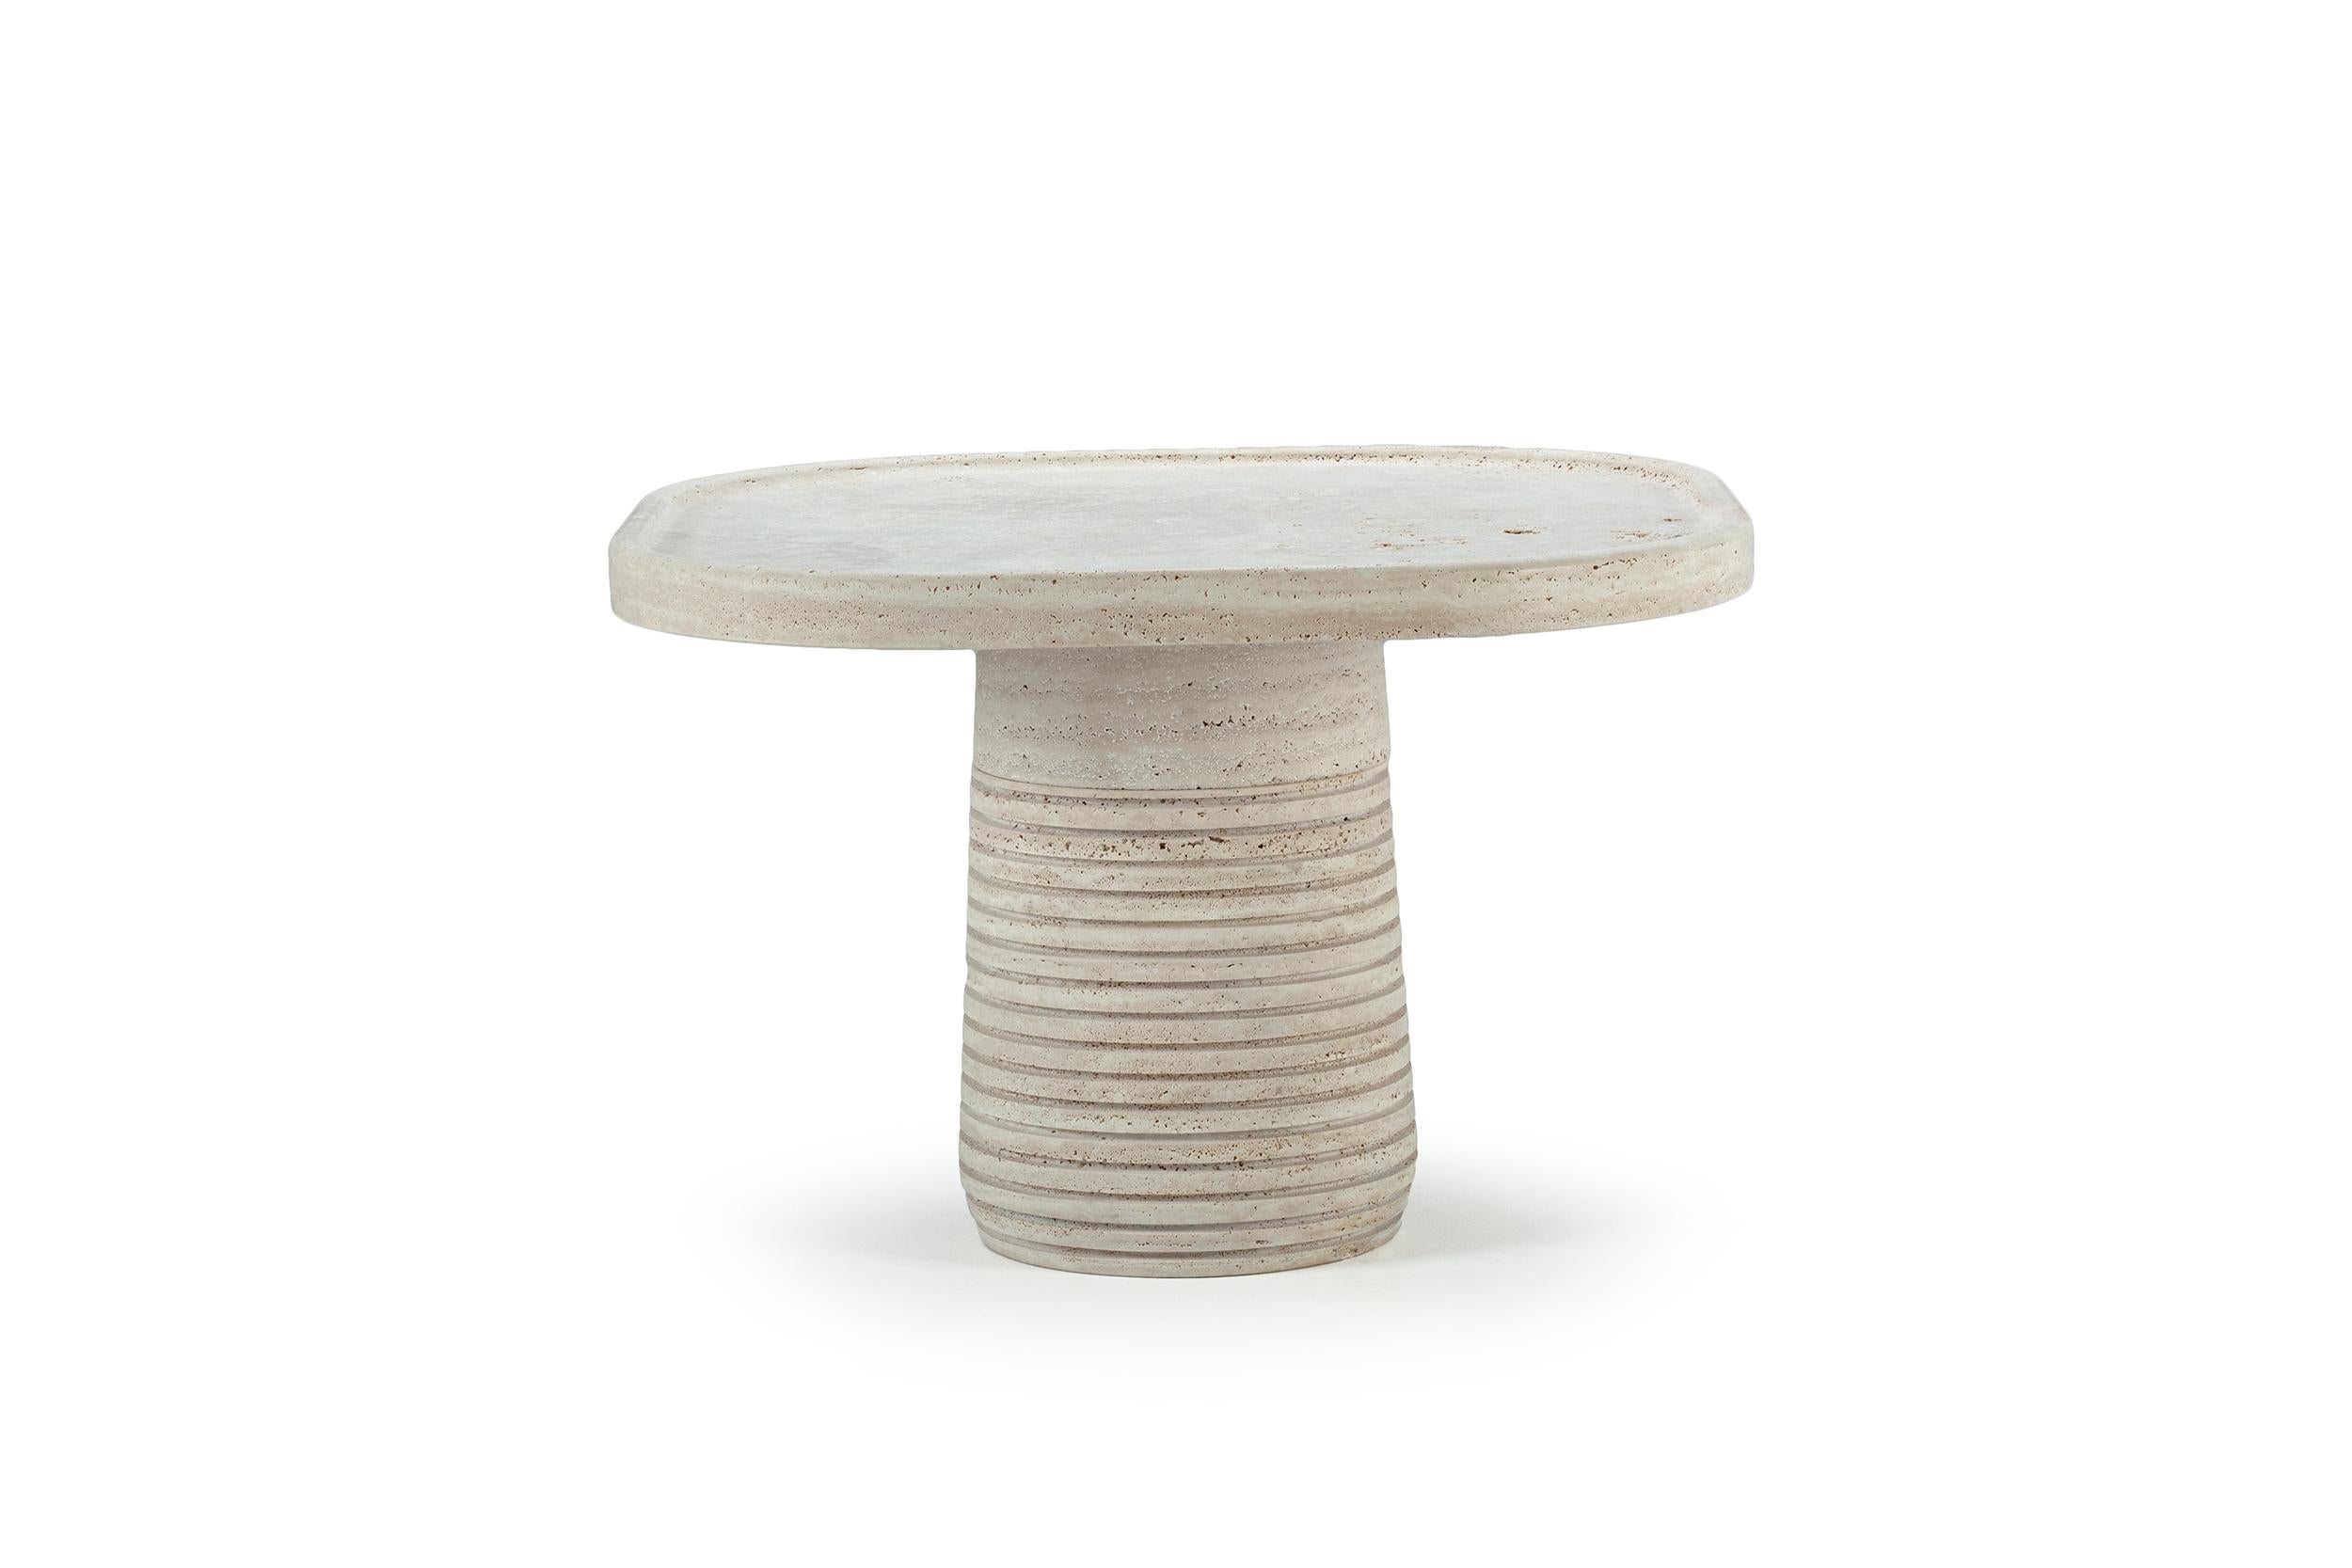 La table Coquelicot est un emblème de la nature et de la croissance organique. Derrière ce design se cache une essence de naïveté que l'on retrouve sans effort dans les formes naturelles. Les tables de pavots sont un exemple très précis de la